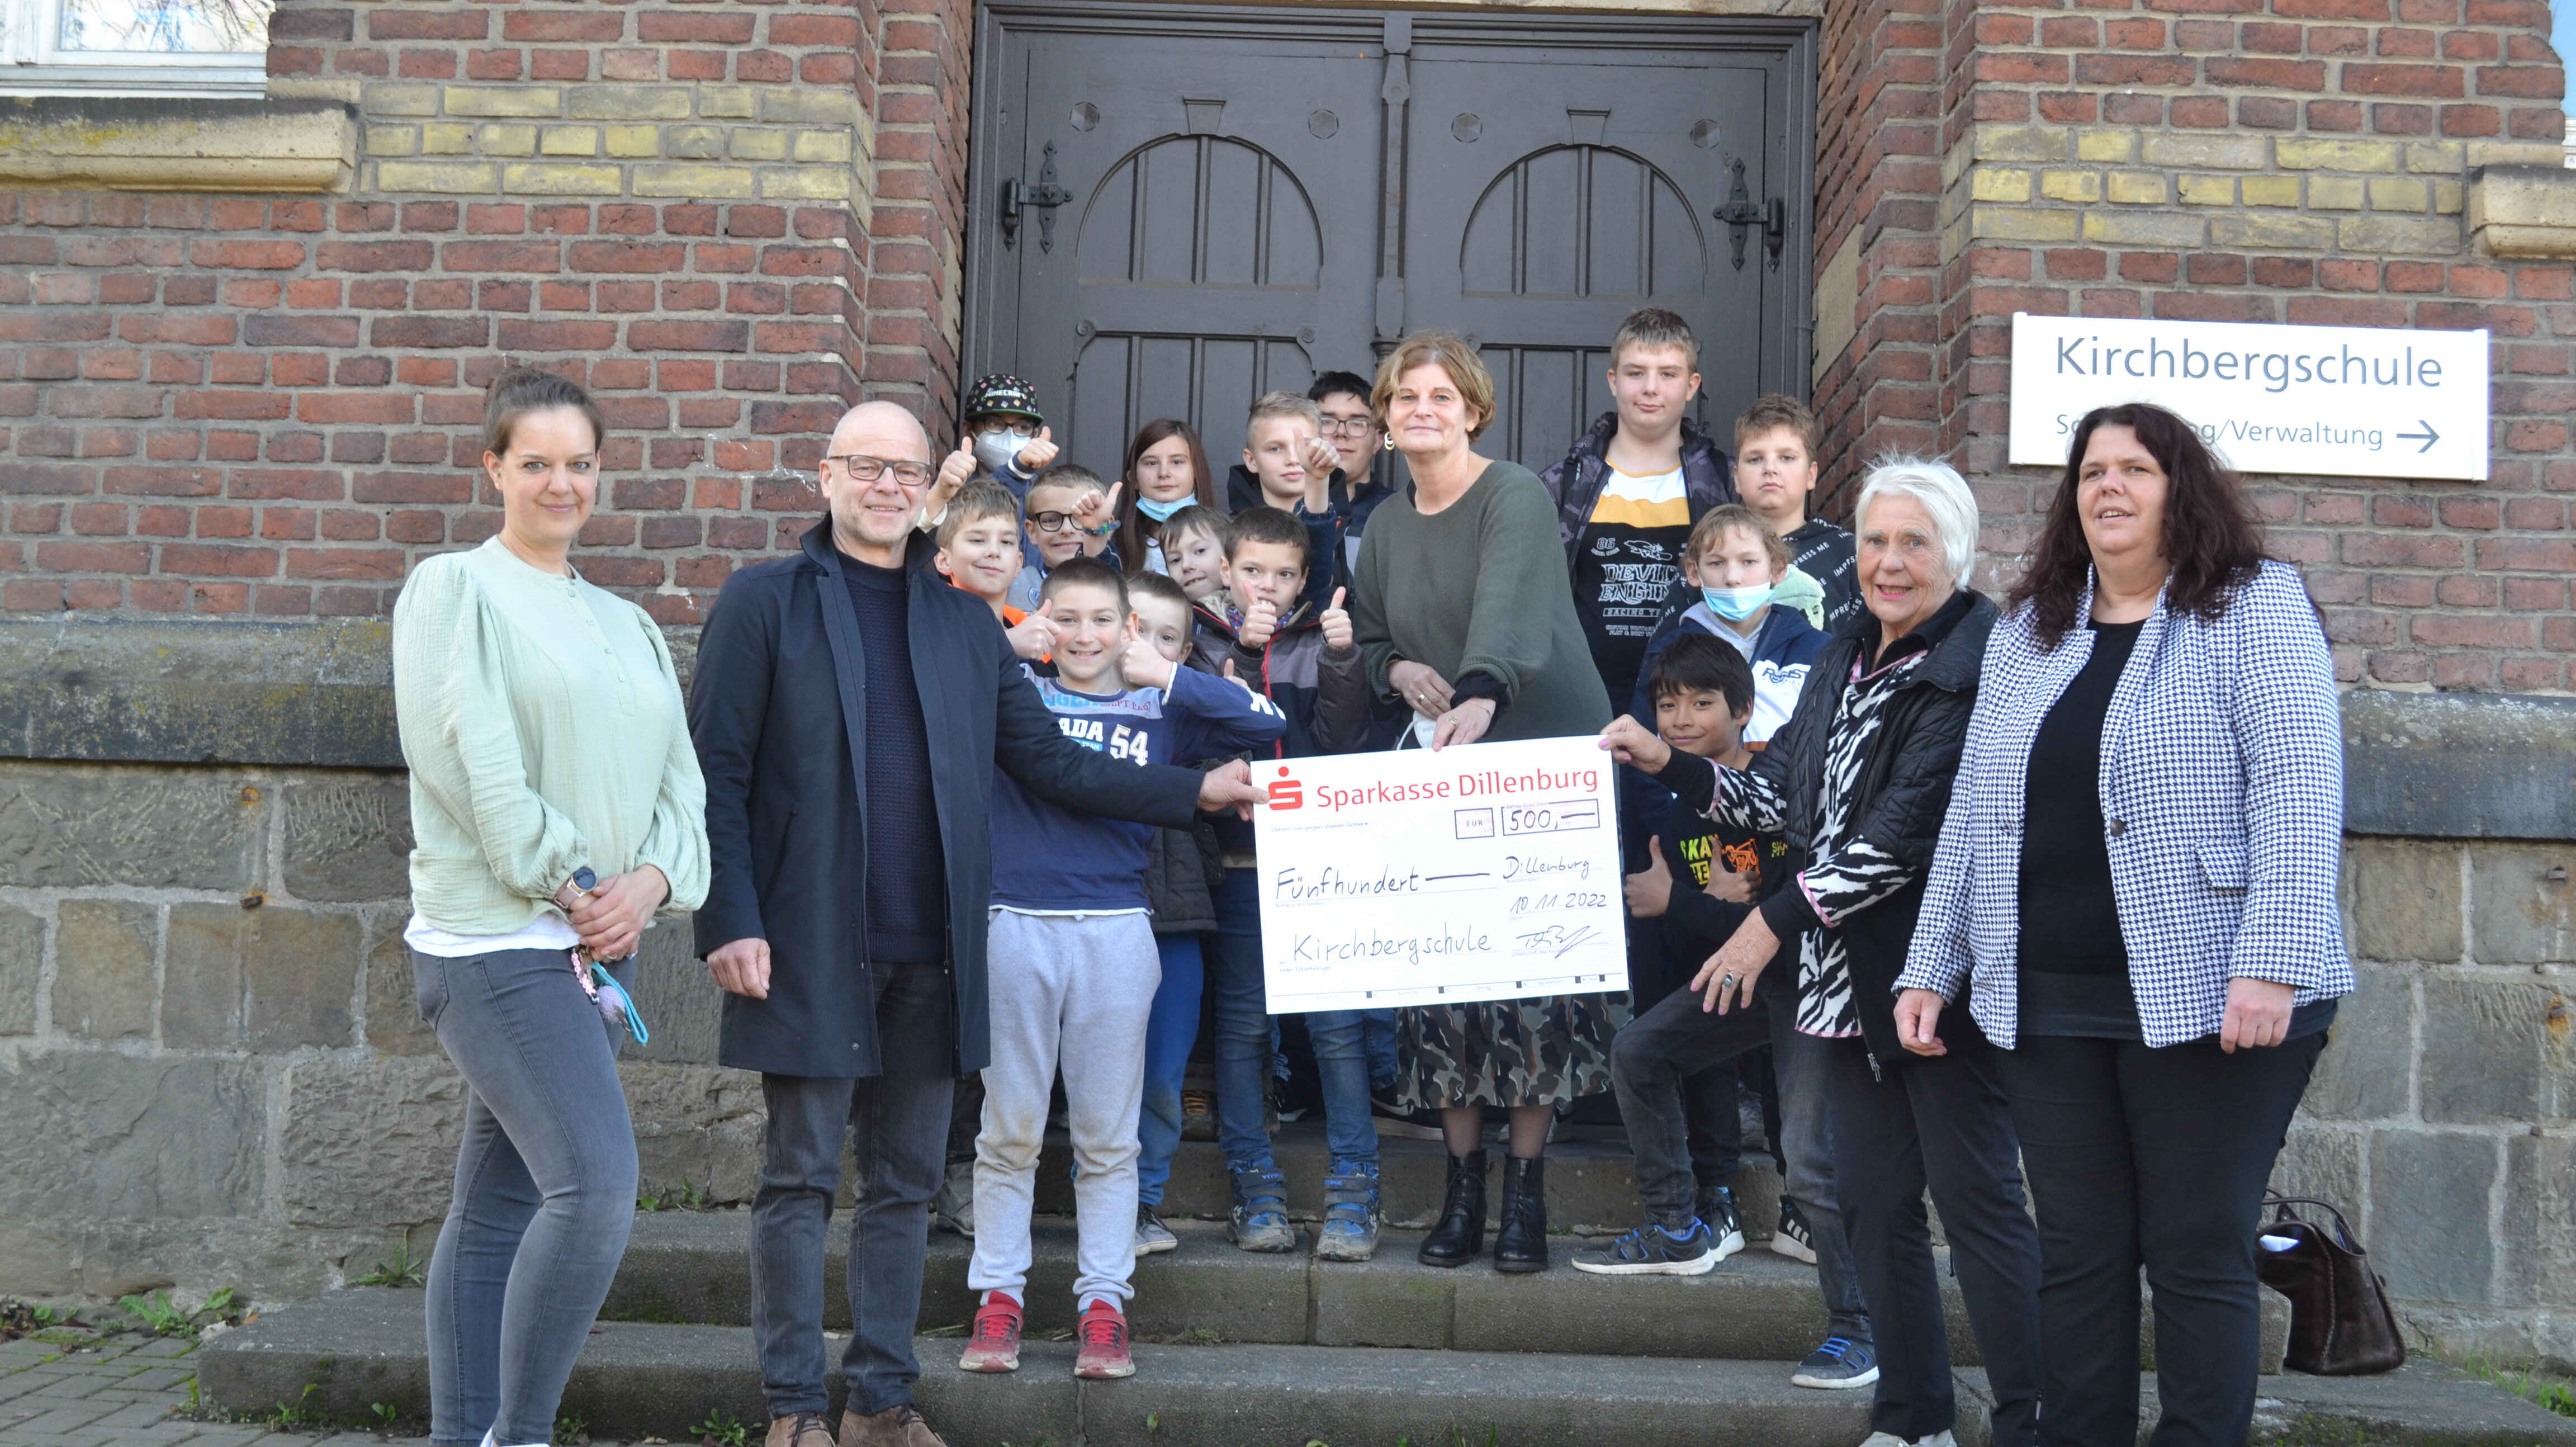 Spendenübergabe Kirchbergschule, mehrere Personen mit Spendencheck über 500 Euro